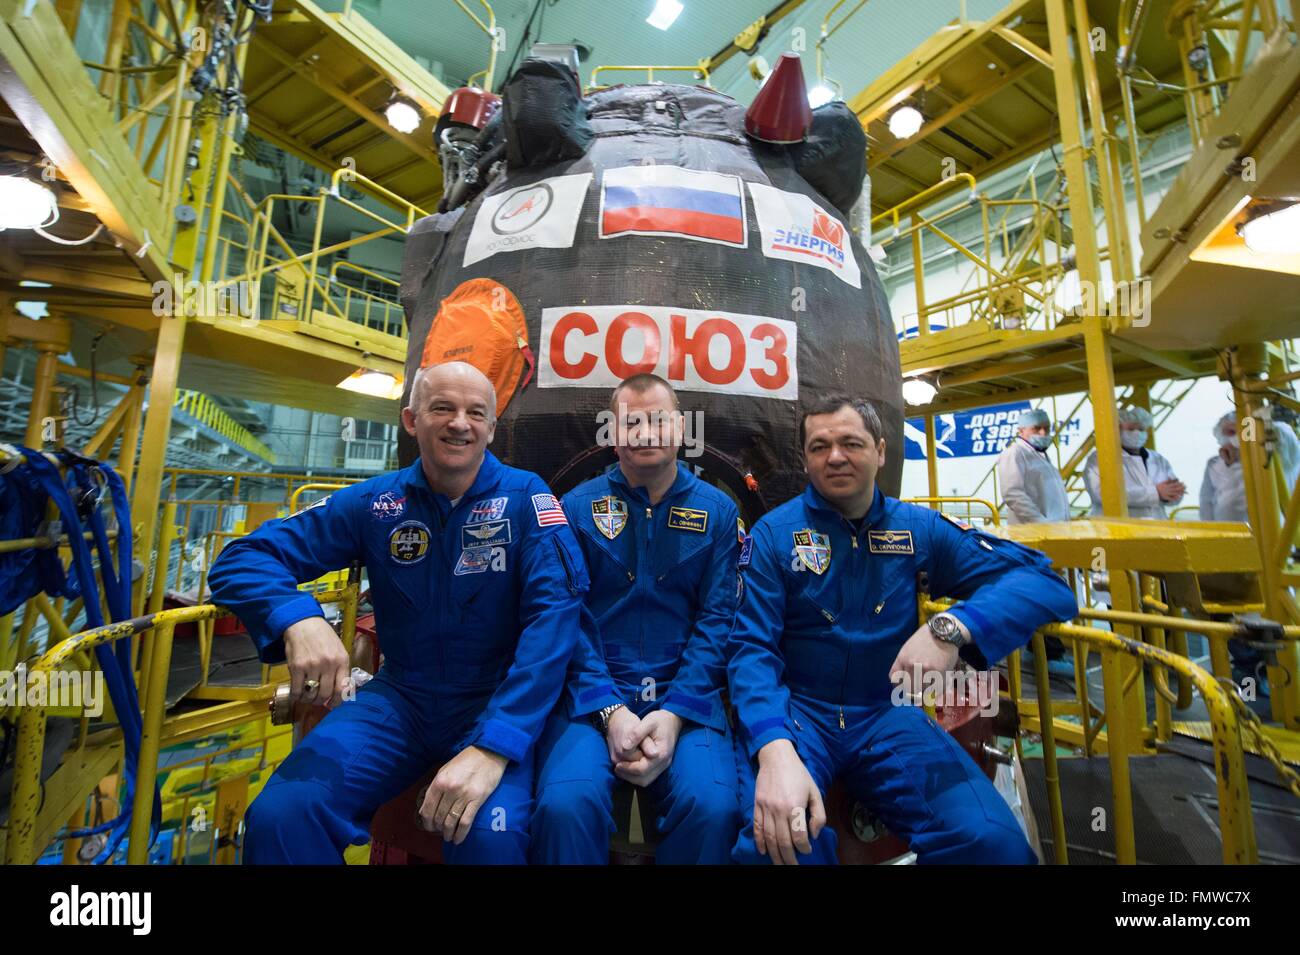 Stazione Spaziale Internazionale Expedition 47 primo equipaggio pongono in nella parte anteriore della navicella spaziale Soyuz durante il training di pre-lancio presso il cosmodromo di Baikonur il 4 marzo 2016 in Kazakistan. (L-R): astronauta americano Jeff Williams e cosmonauti russi Alexei Ovchinin e Oleg Skripochka. Foto Stock